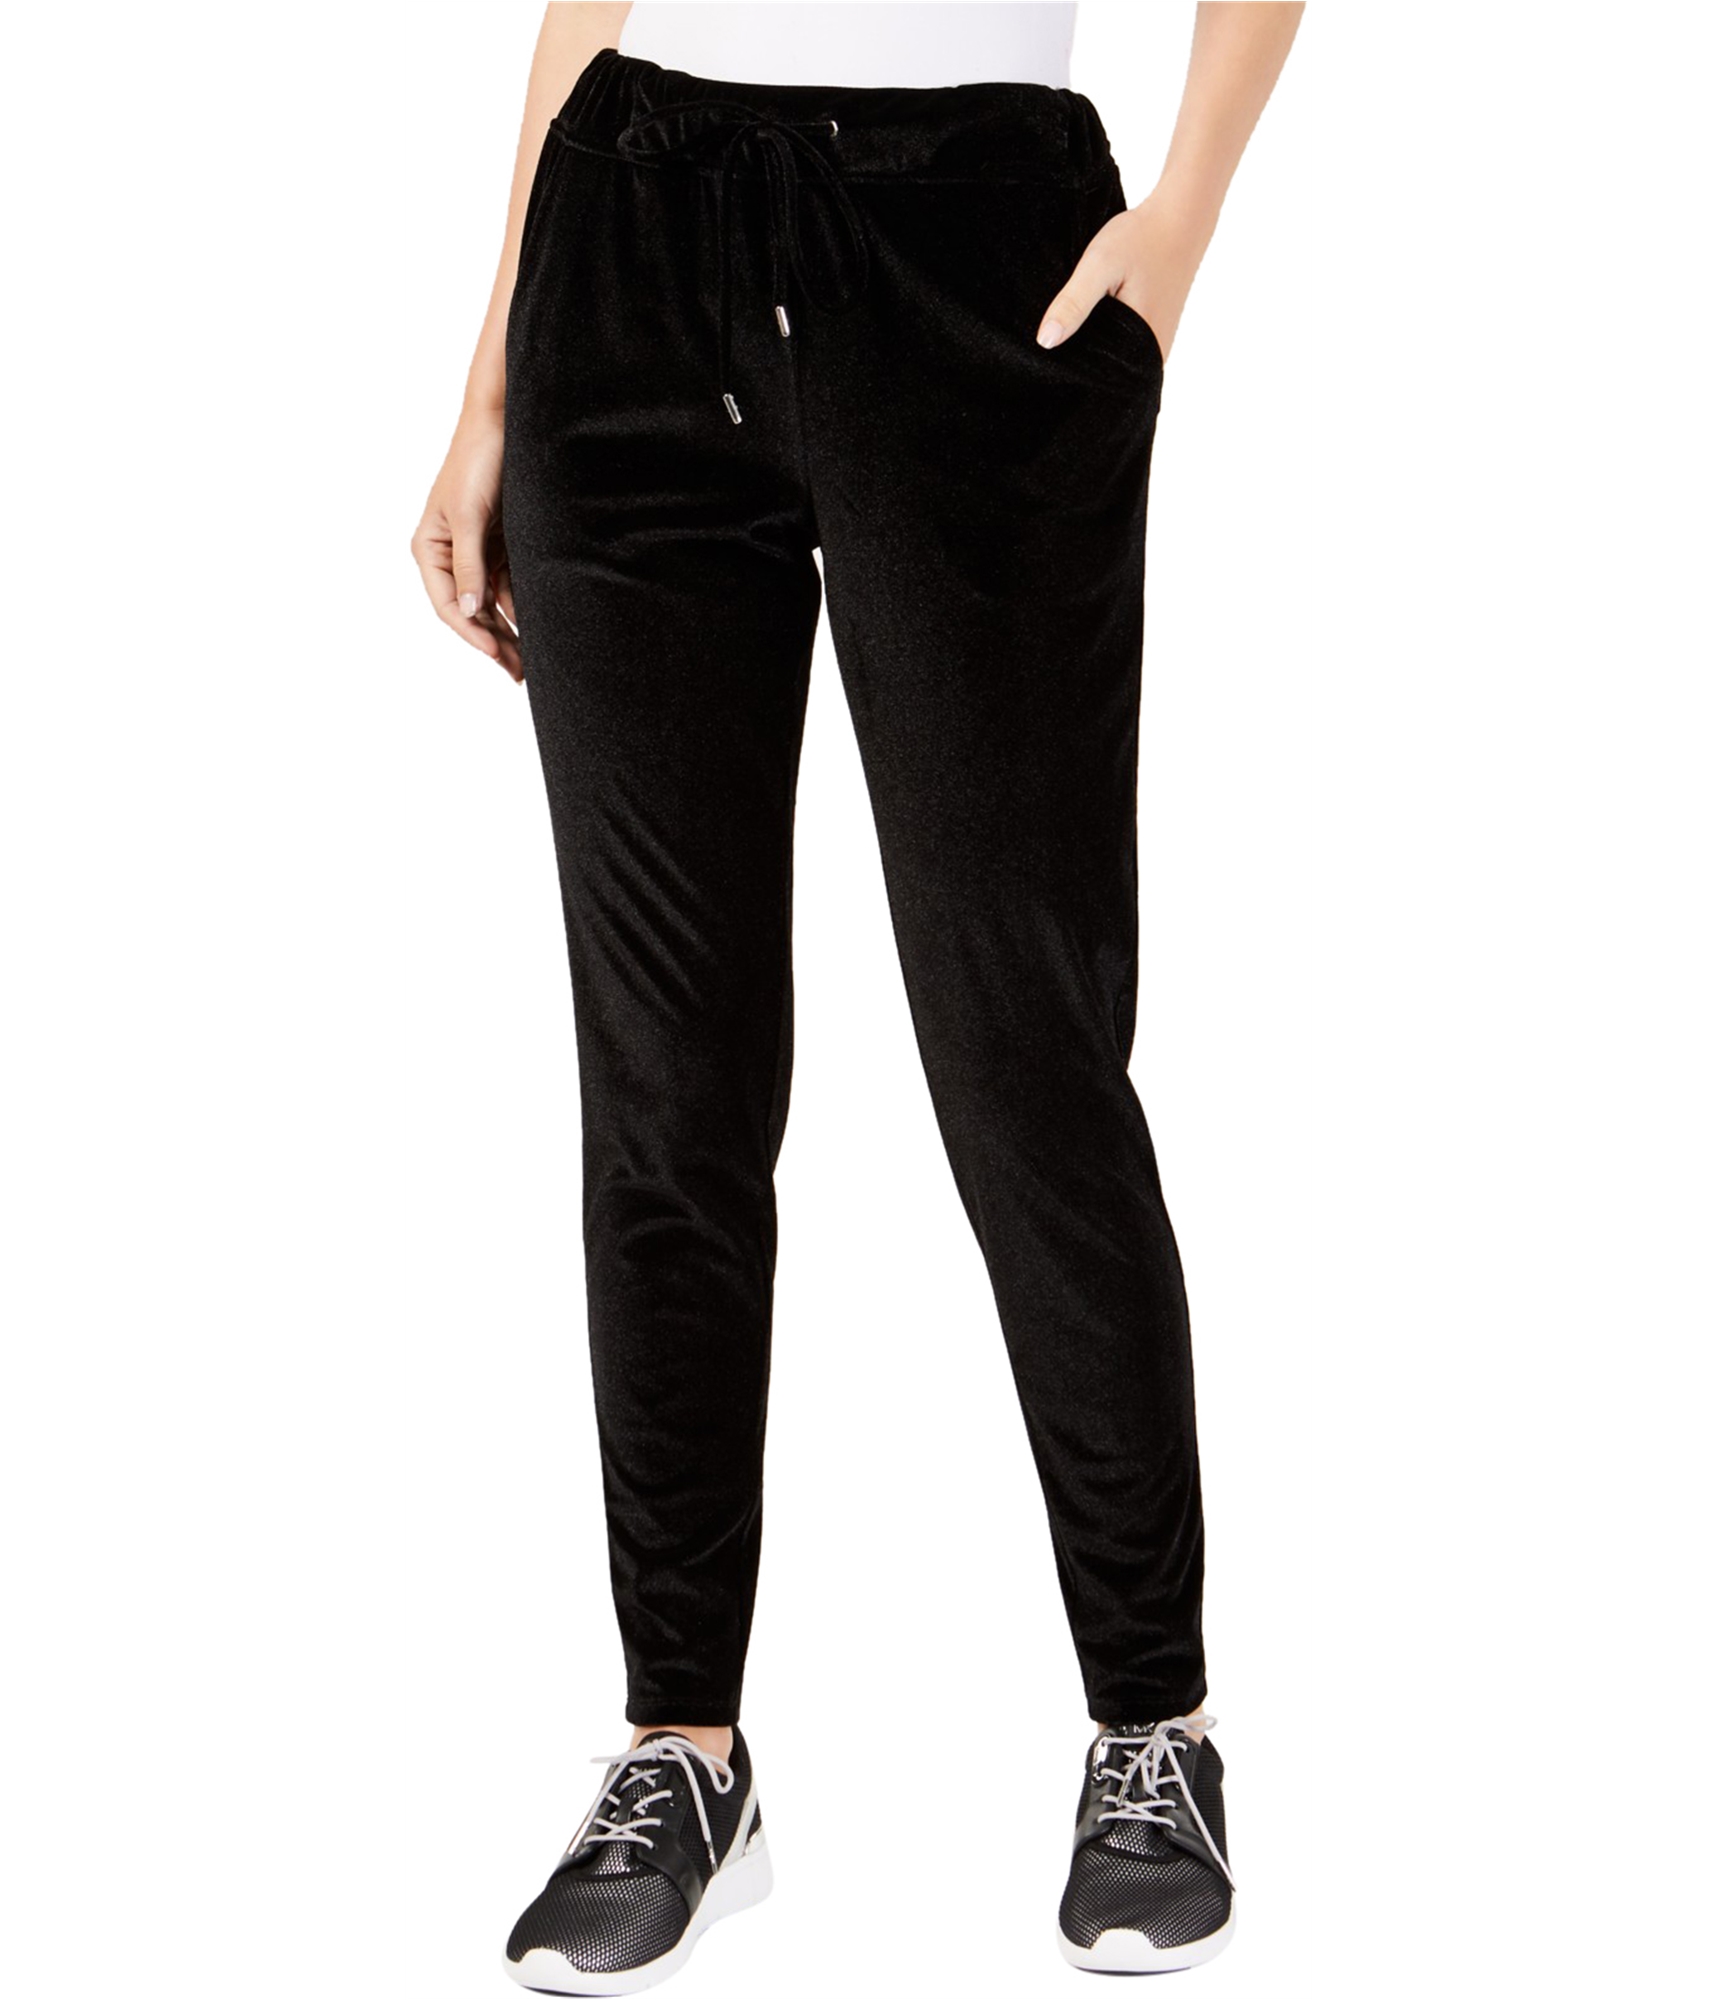 Michael Kors Womens Velvet Casual Jogger Pants, Black, Medium | eBay